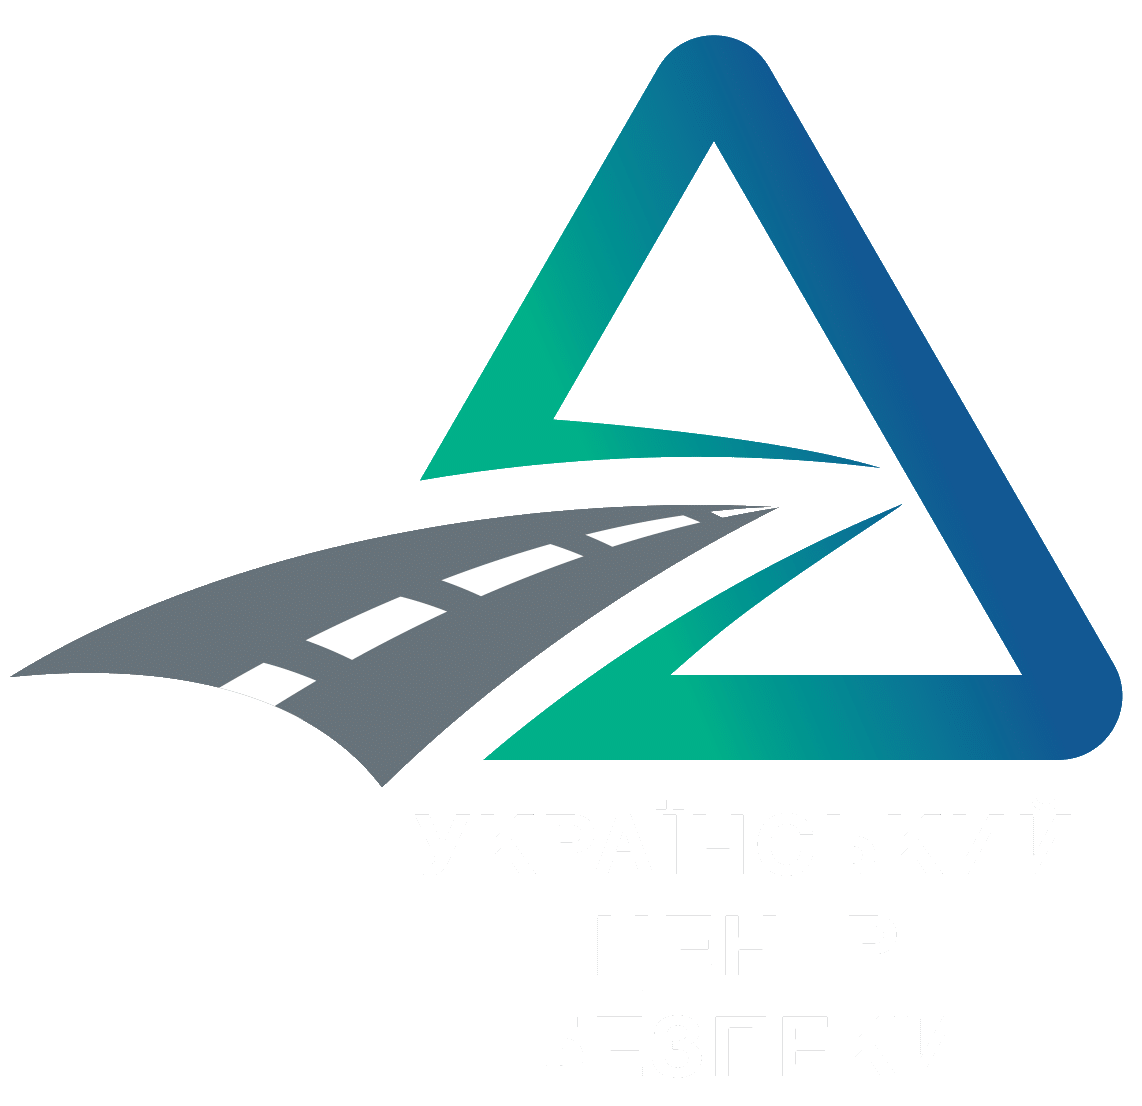 Підтвердження професійної компетентності водія транспортних засобів для надання послуг з перевезення пасажирів та/або вантажів | Український центр безпеки